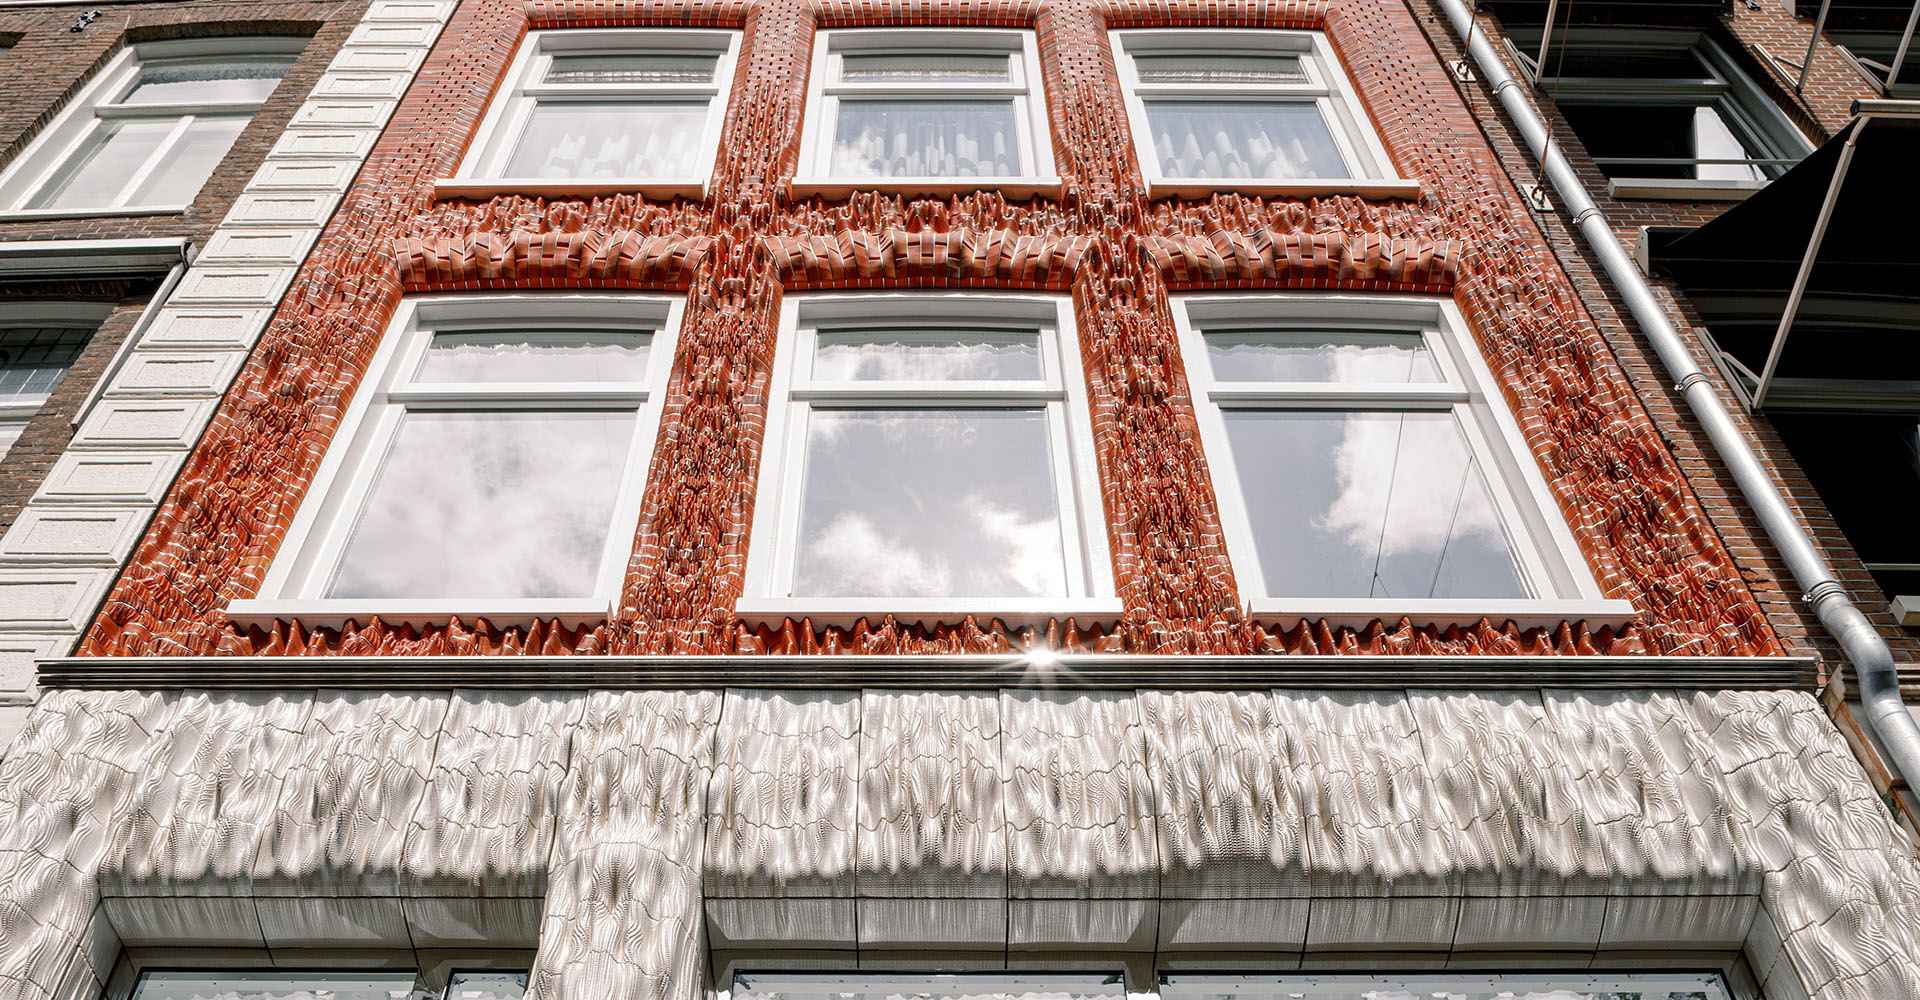 Вызов условностям - Studio RAP облицевала фасад бутика в Амстердаме 3D-печатной плиткой, визуально напоминающей ткань